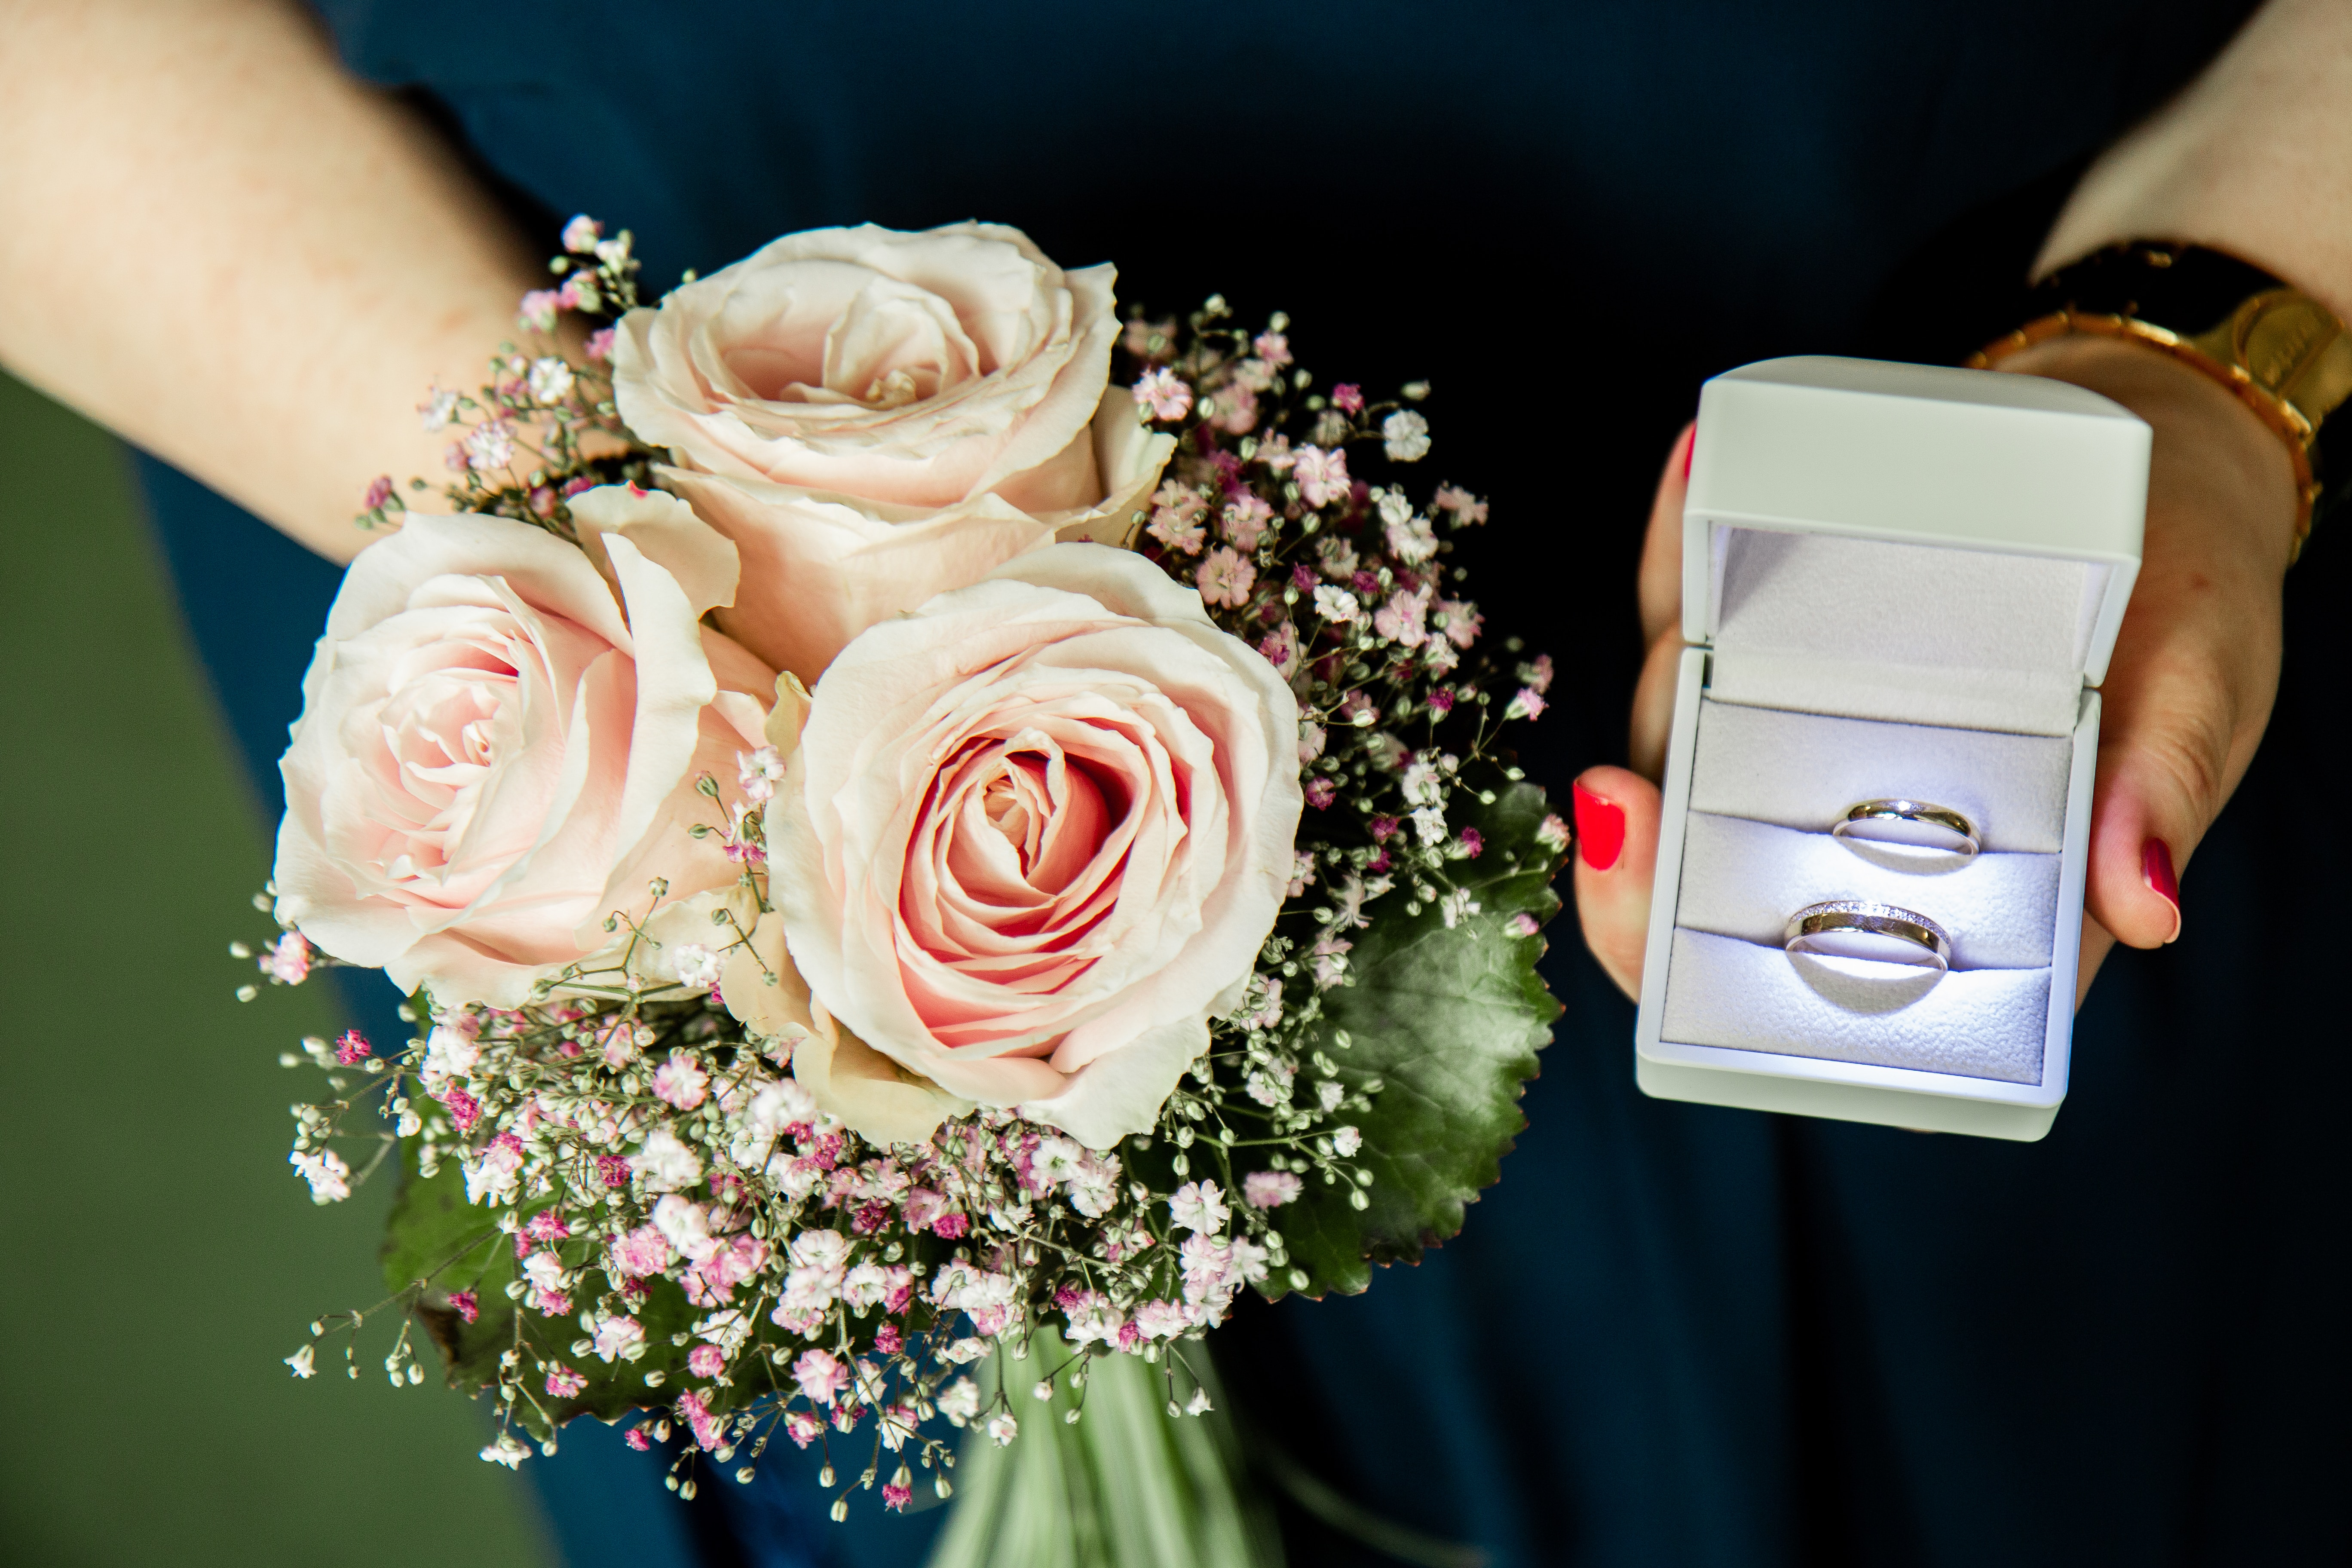 プロポーズの時、指輪はもらった?<br>彼女のホンネは「指輪は自分で選びたい。」